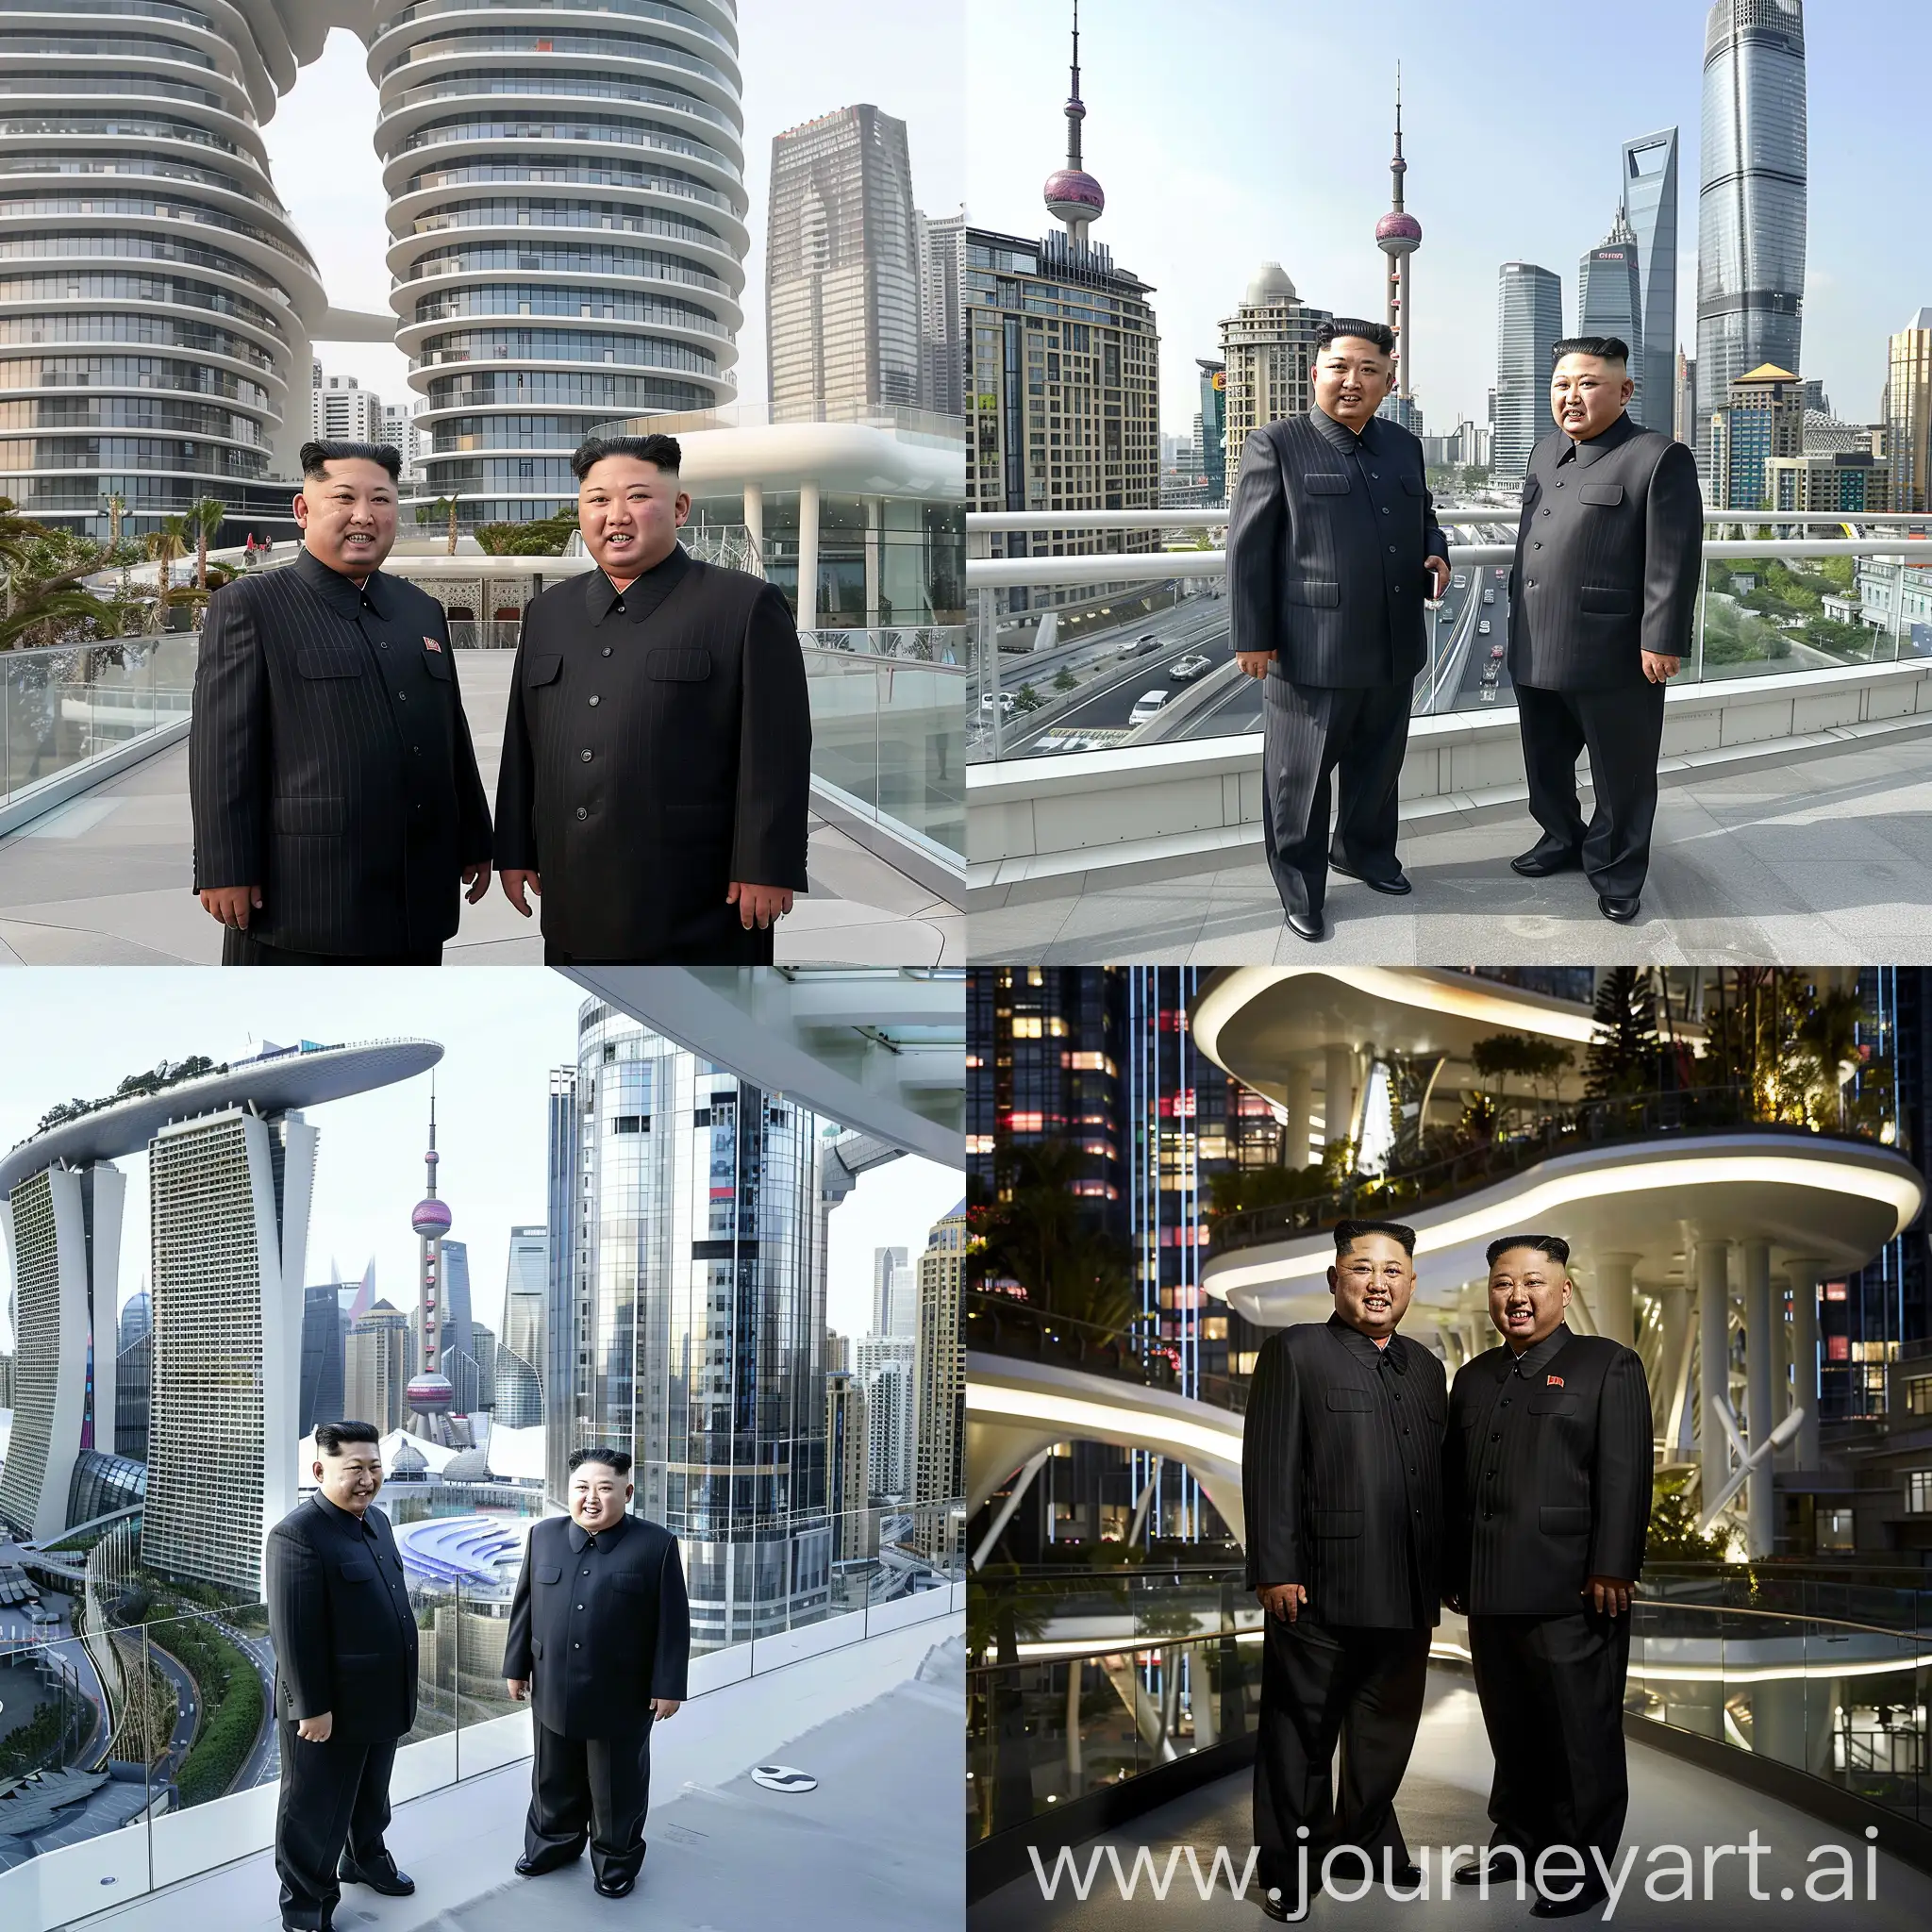 Xi  and Kim Jong-il meet in a Futuristic ultra-modern city